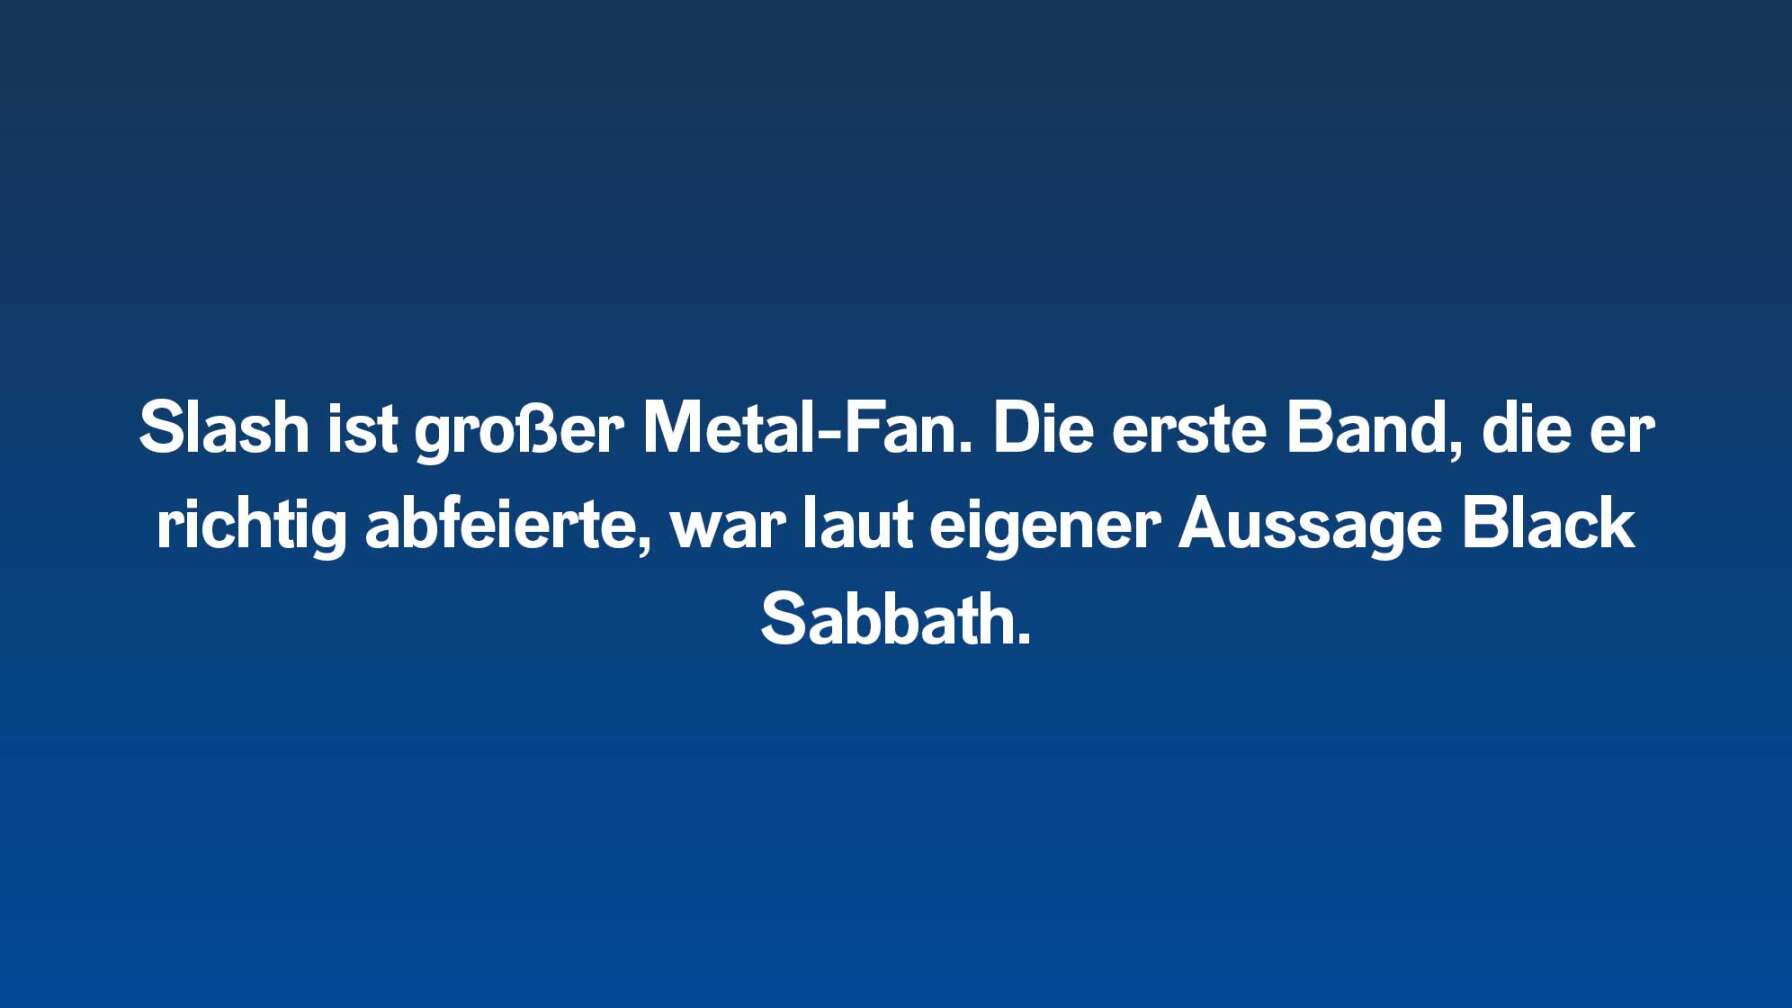 Slash ist großer Metal-Fan. Die erste Band, die er richtig abfeierte, war laut eigener Aussage Black Sabbath.